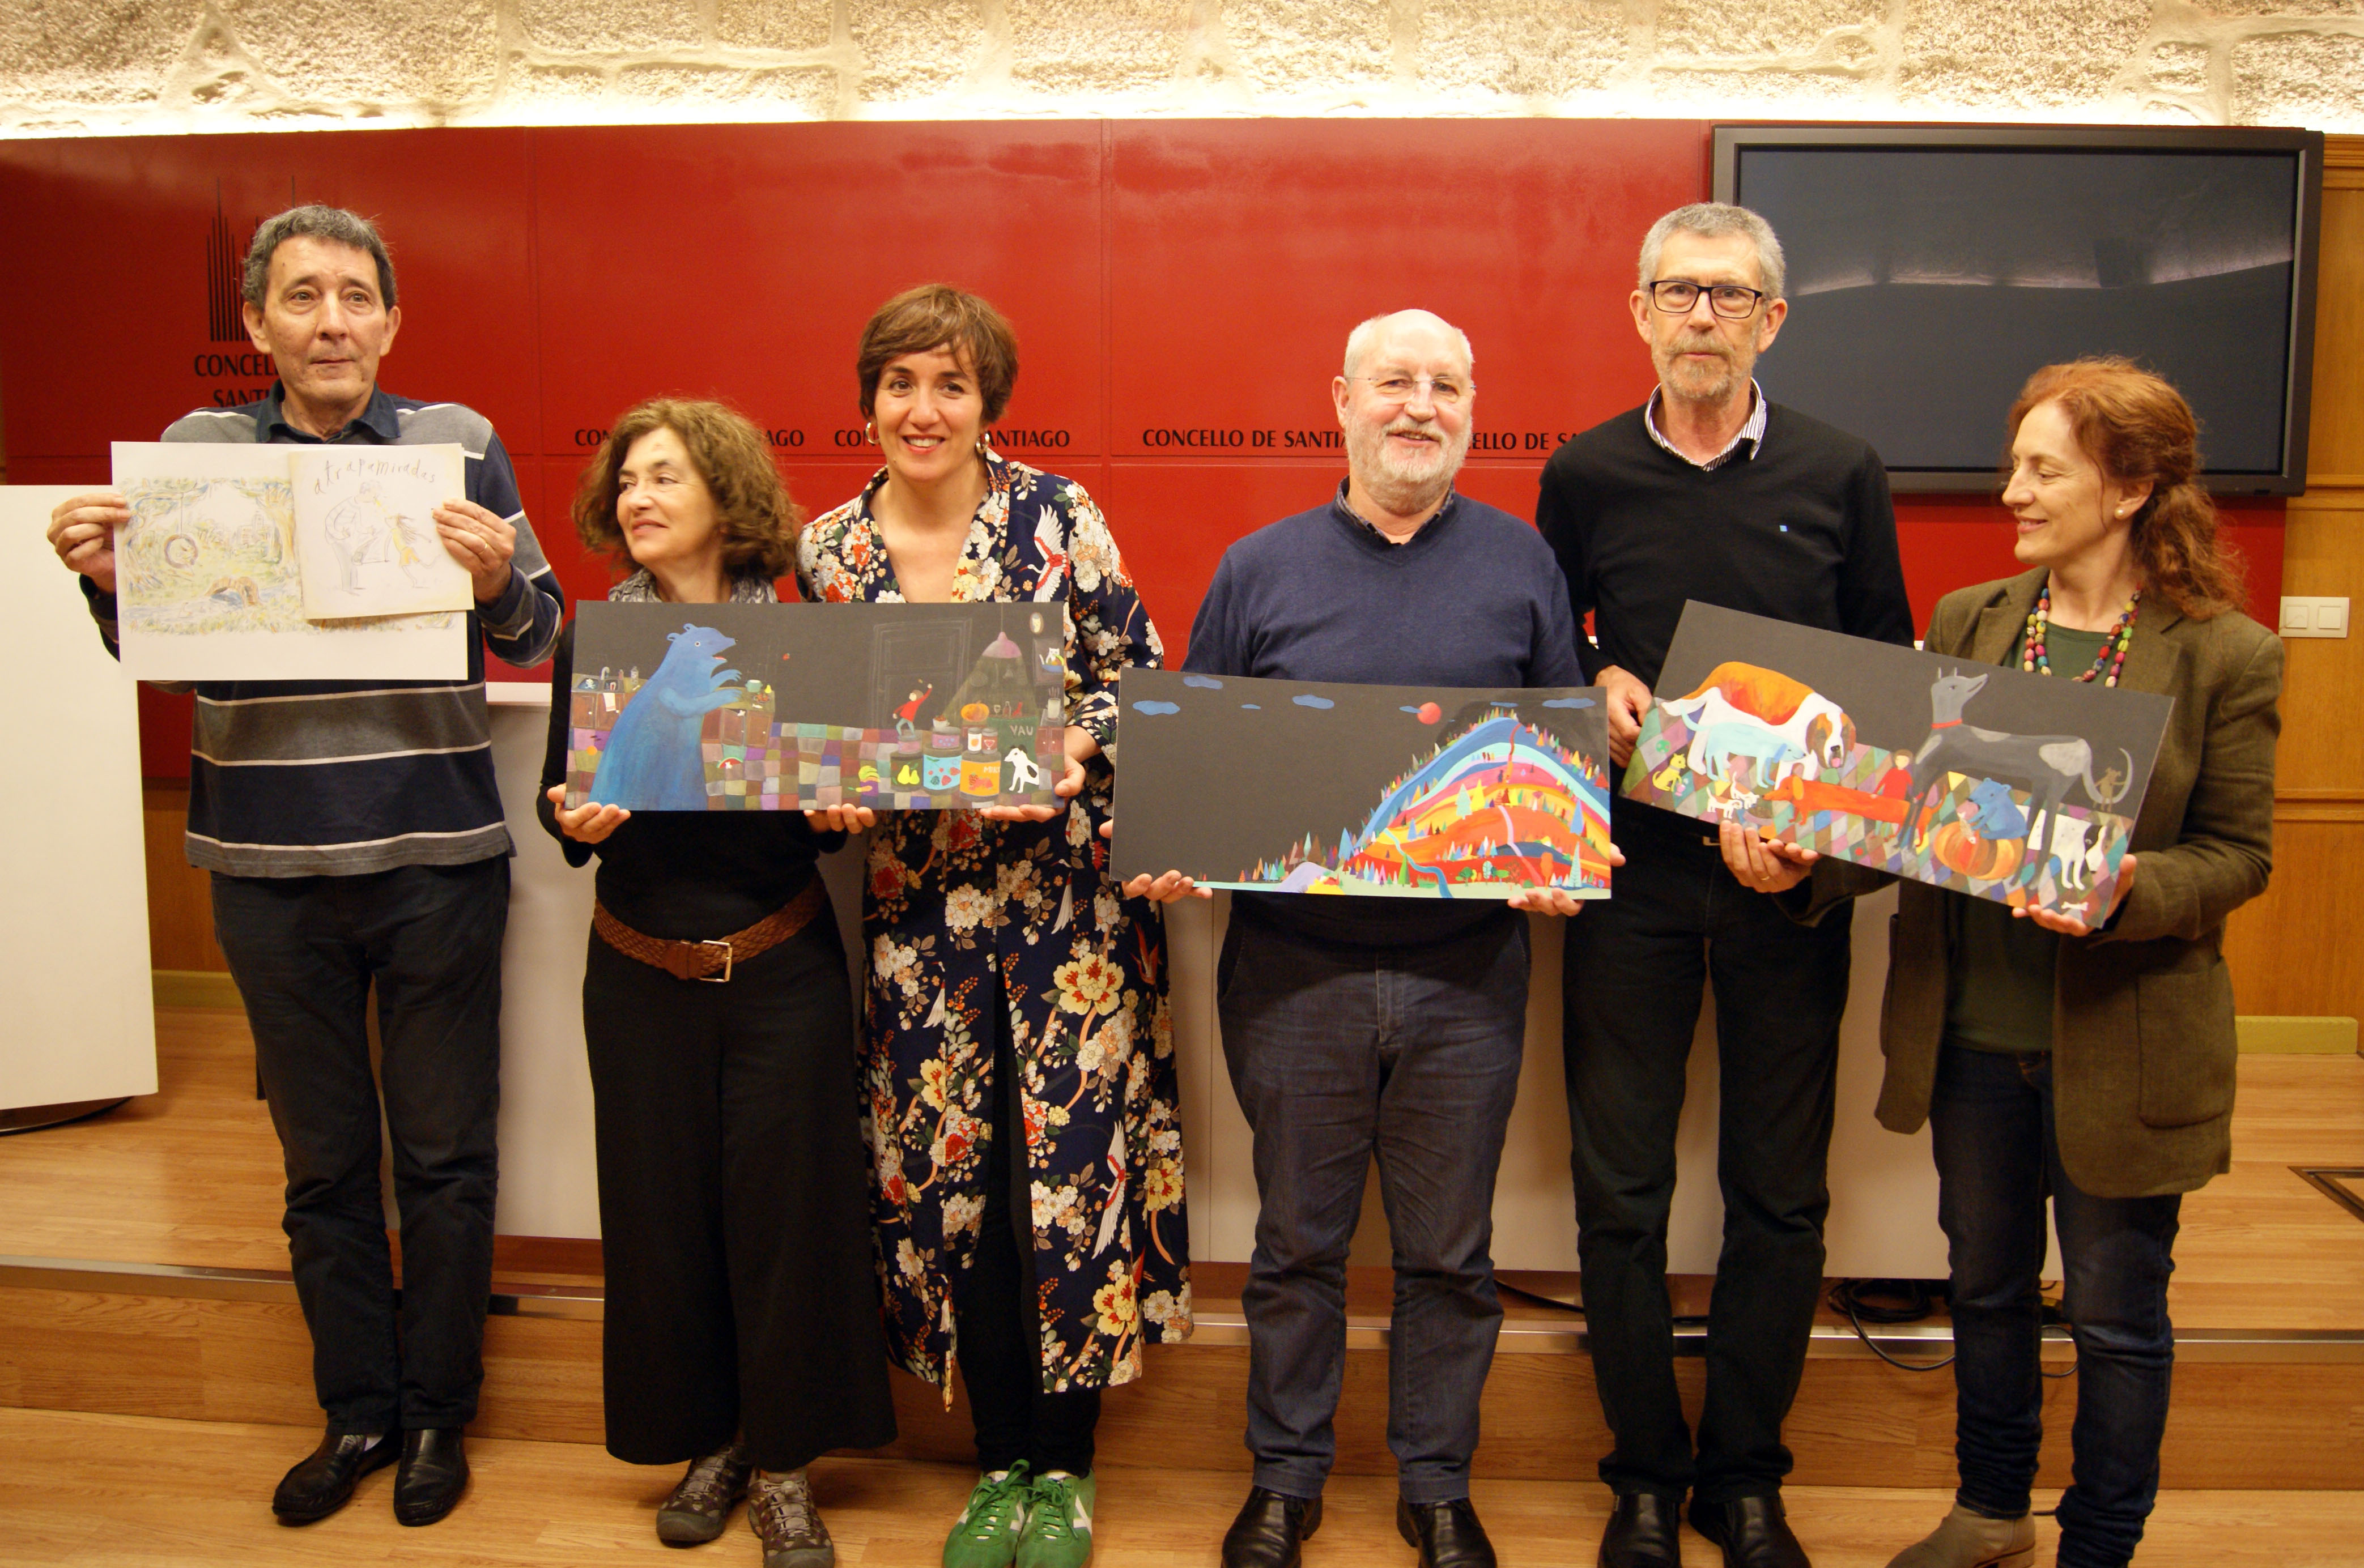 José Morán, Nazaret de Sousa, Noemí Villamuza, Manuel Dios, Xosé Cobas e Manuela Rodríguez cos paneis das obras gañadora e finalista.